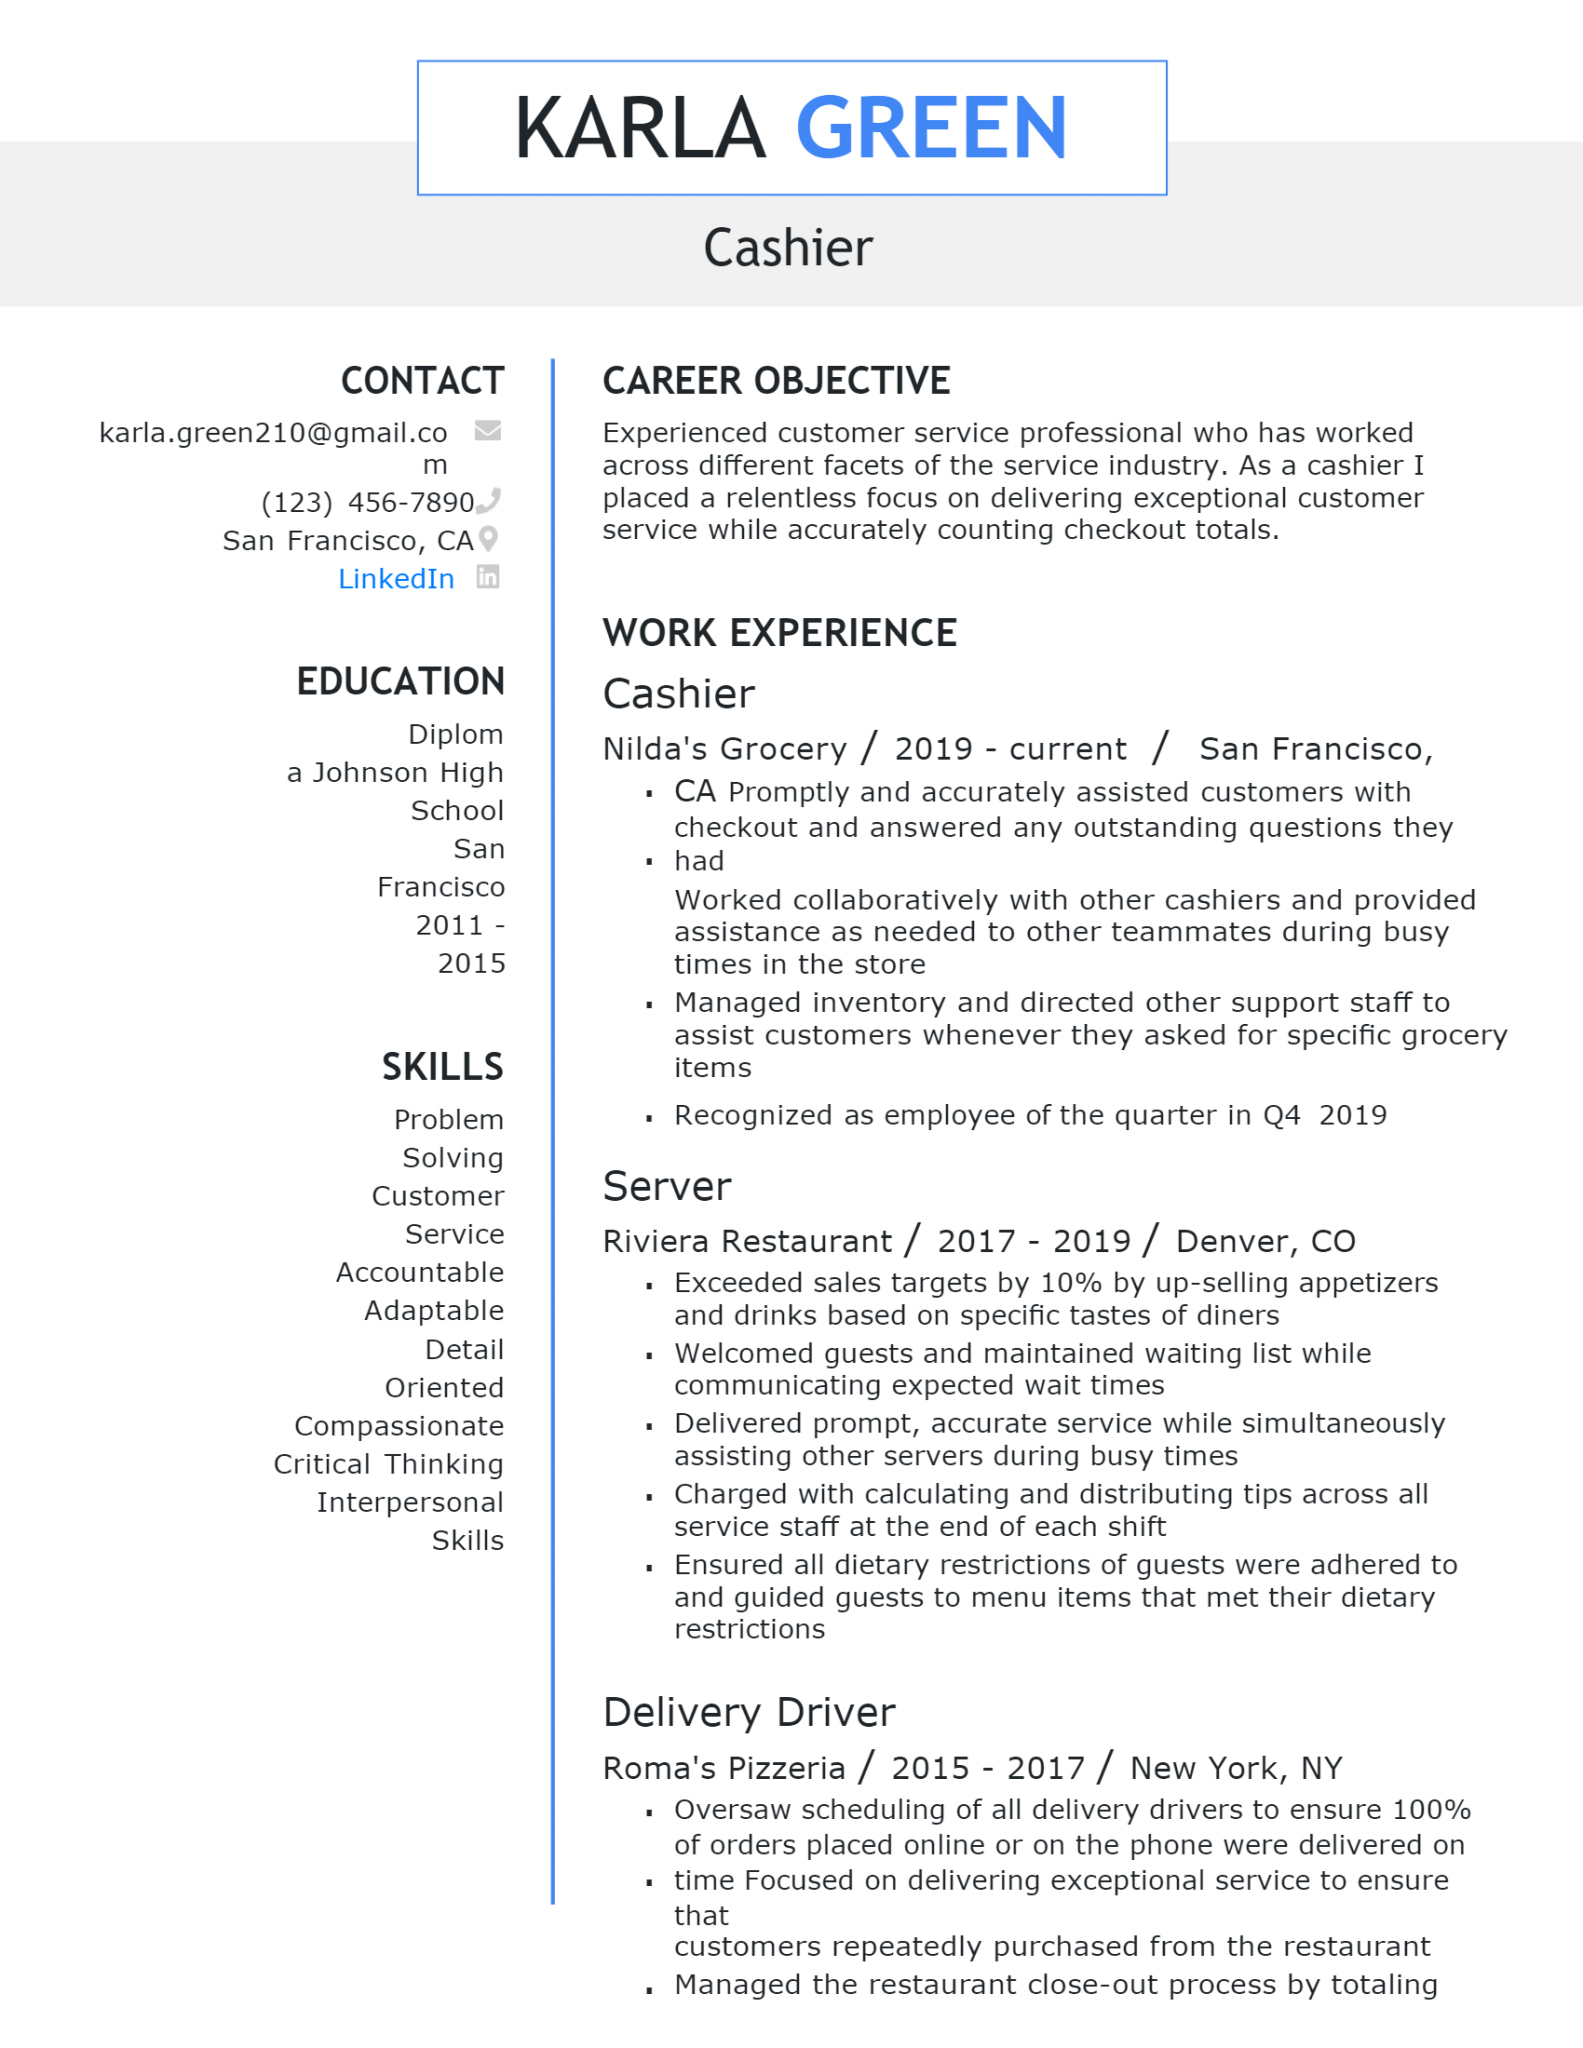 resume format for cashier fresher